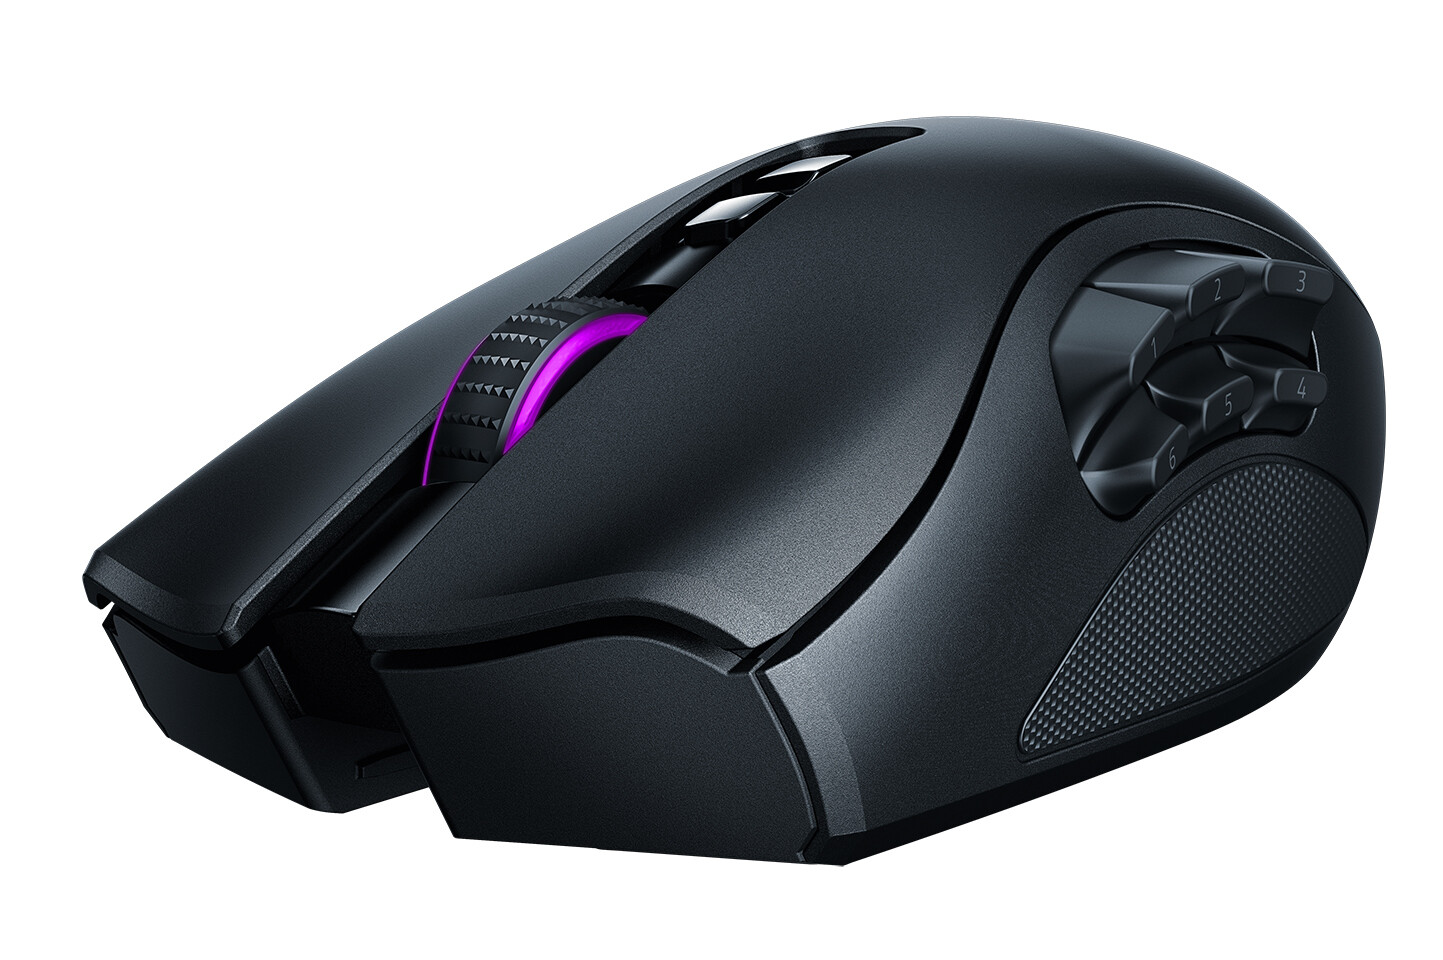 Razer Naga Pro Wireless Gaming Mouse